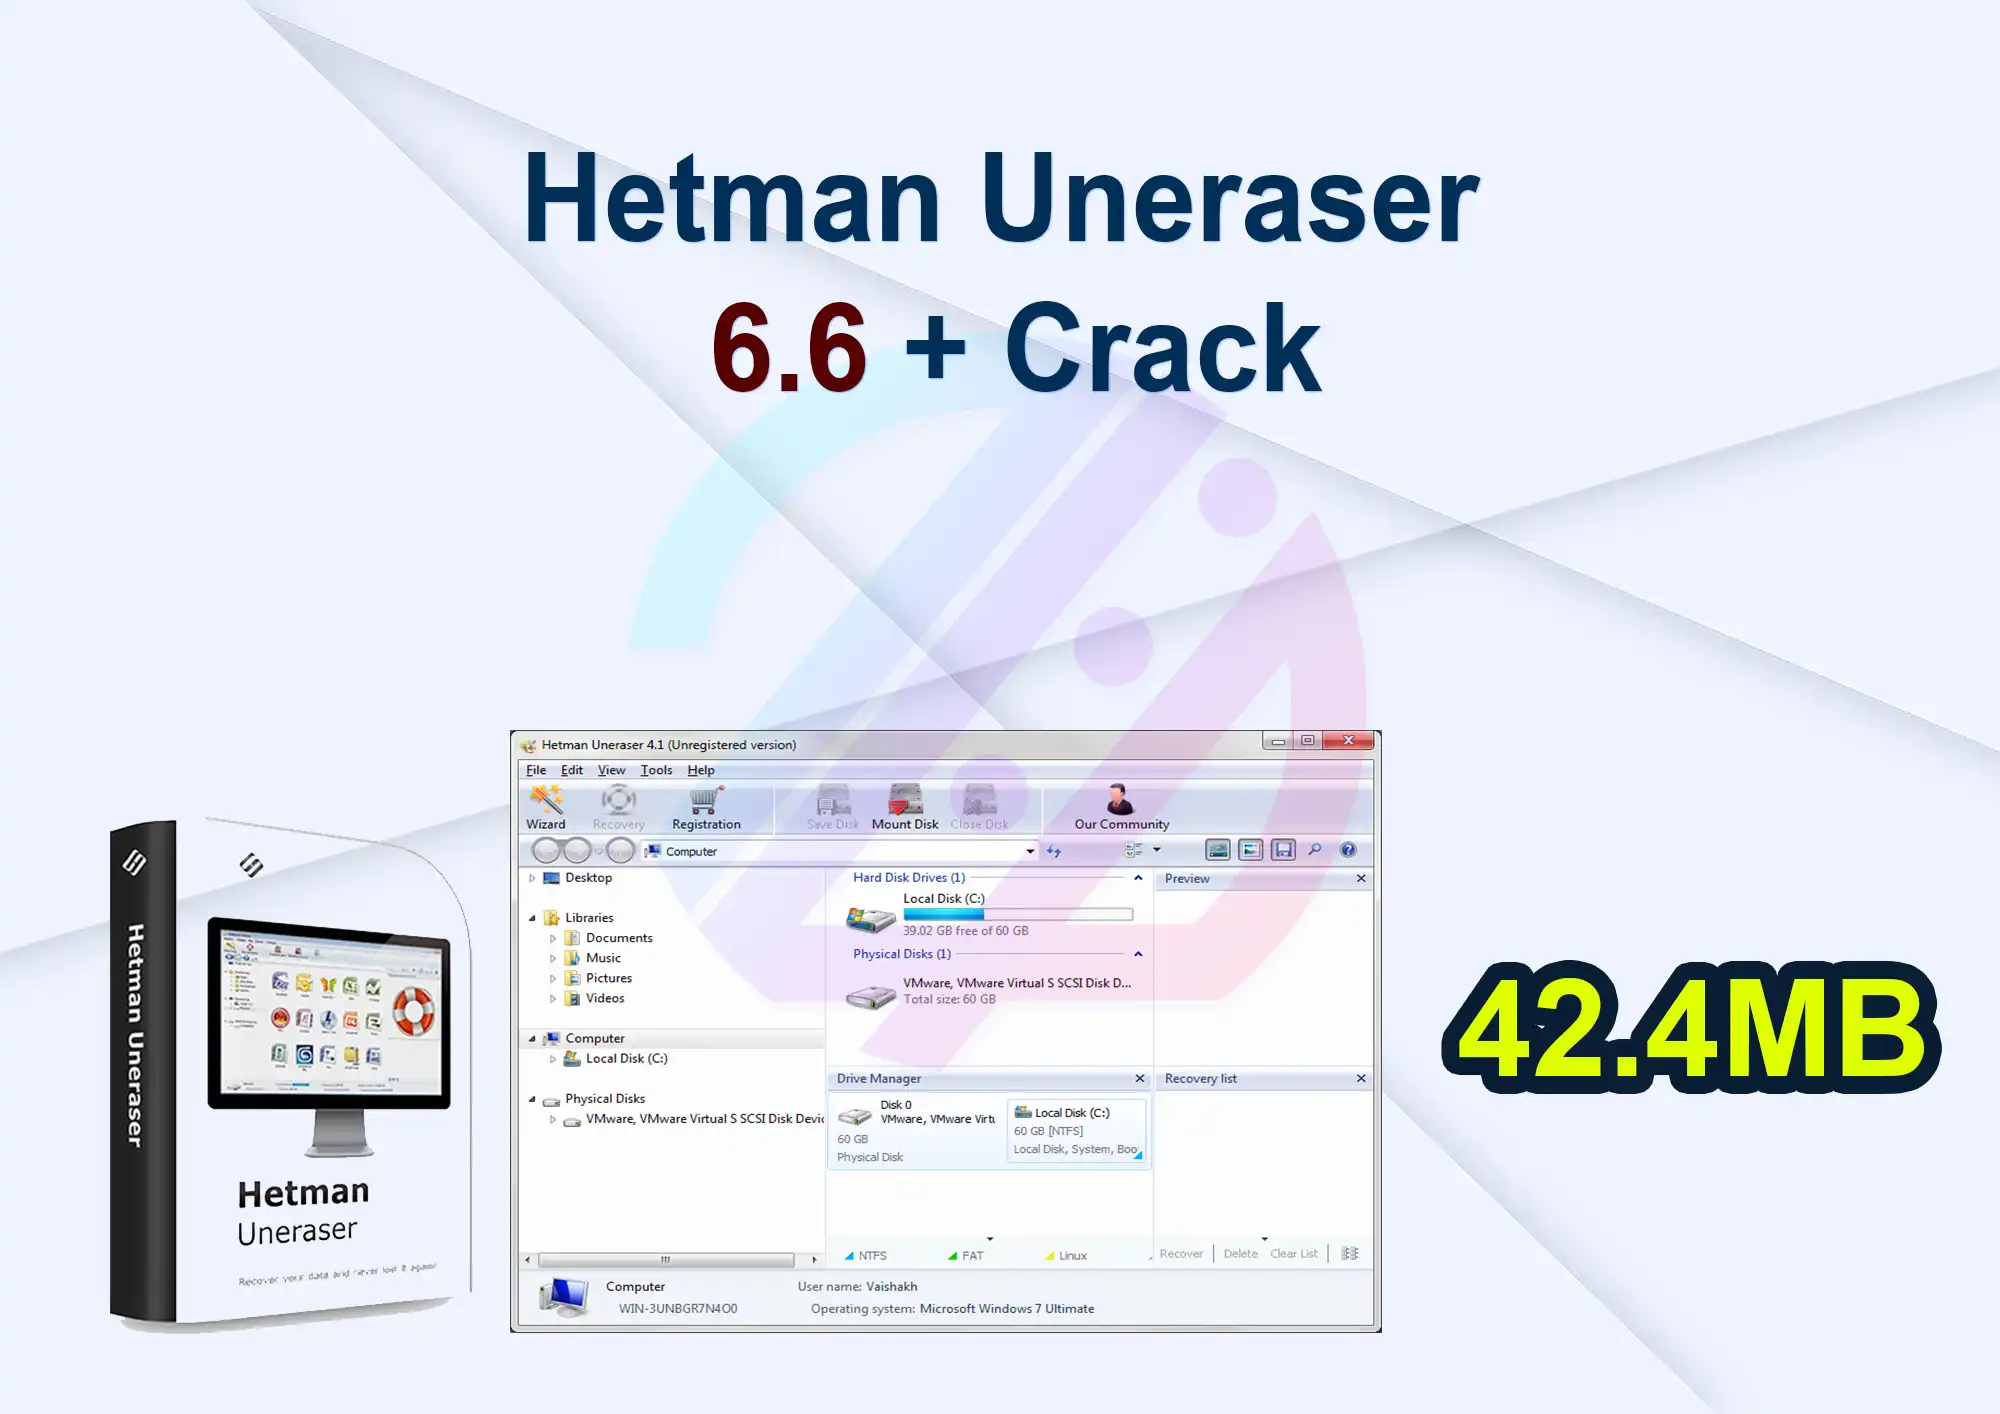 Hetman Uneraser 6.6 + Crack